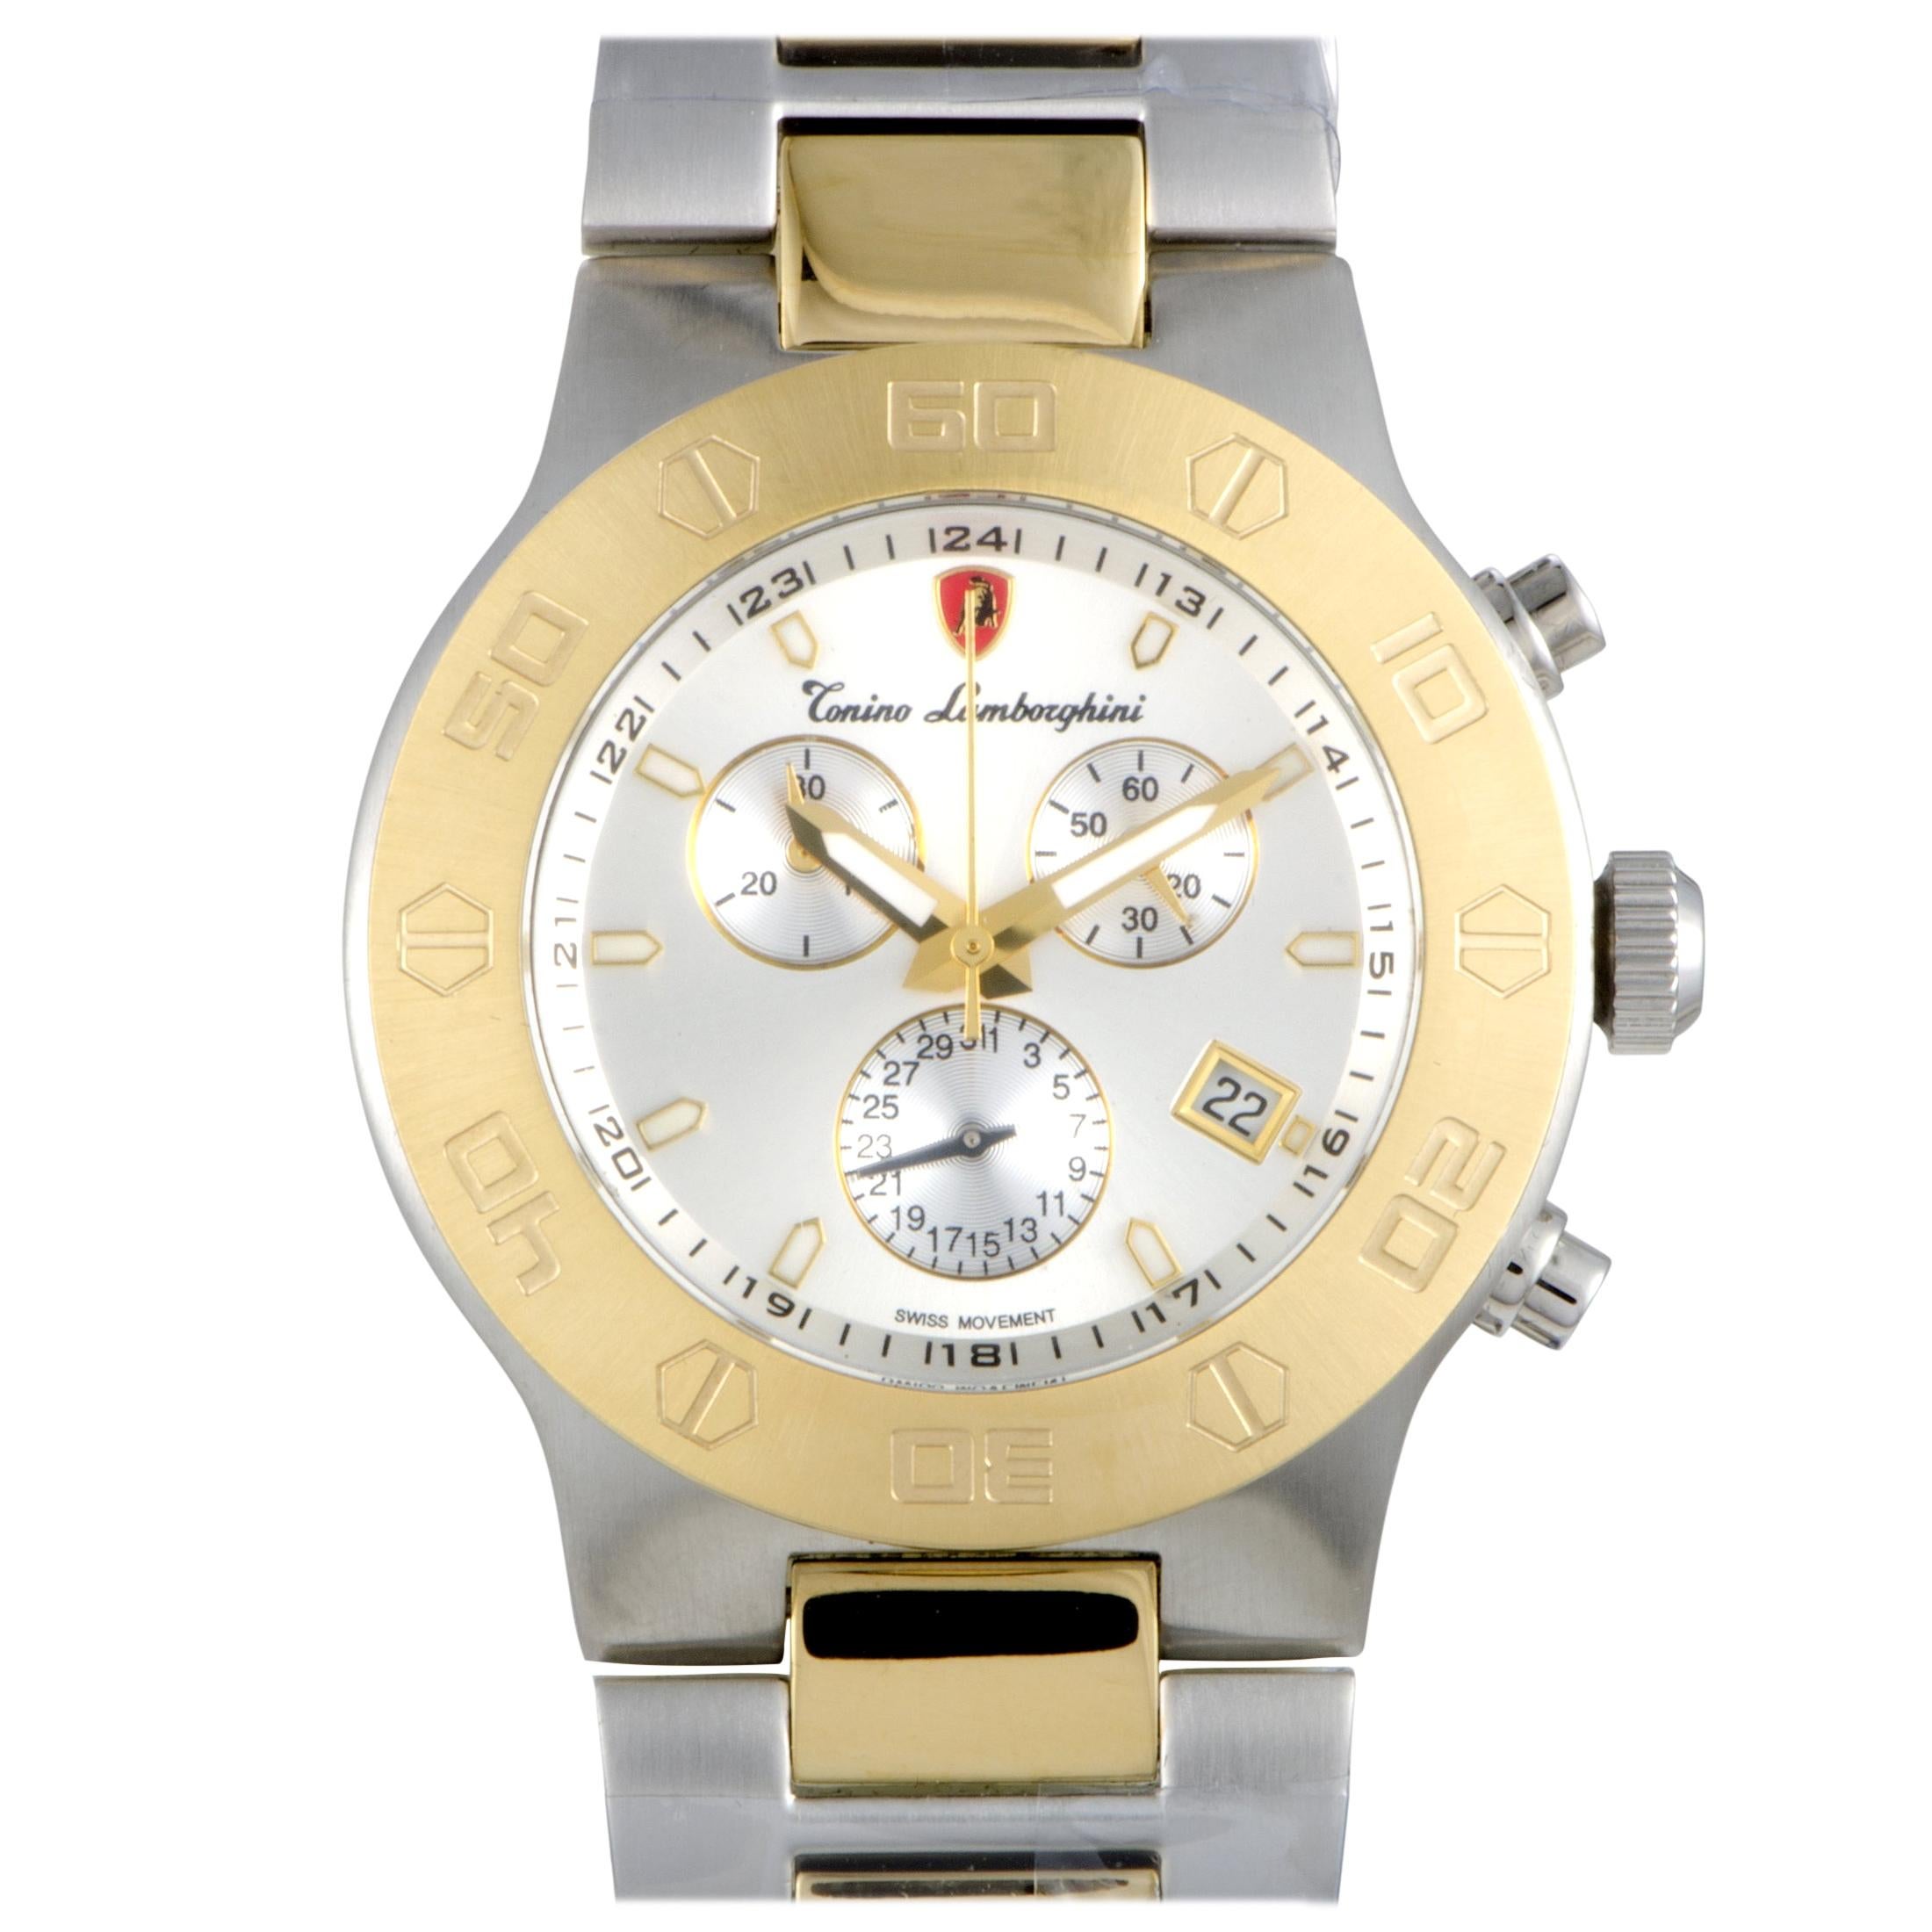 Tonino Lamborghini EN Models Men's Quartz Chronograph Watch EN034.302